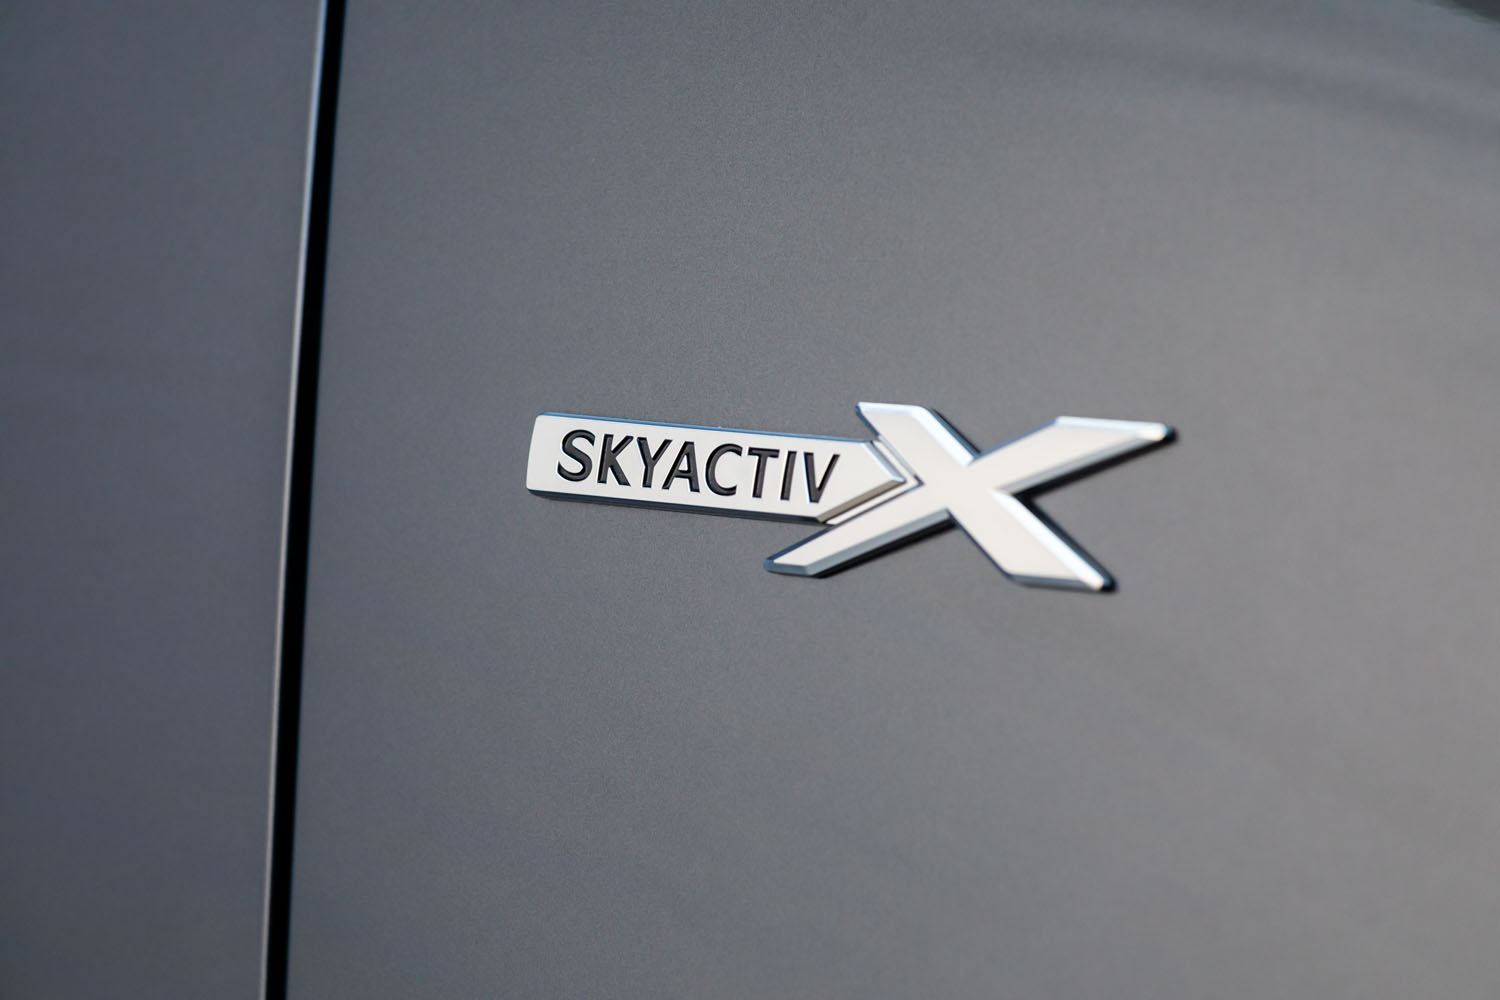 フロントフェンダーに装着される「SKYACTIV X」バッジ。従来装備されている大型マフラーカッターともども、他のエンジン搭載車との差別化が図られている。